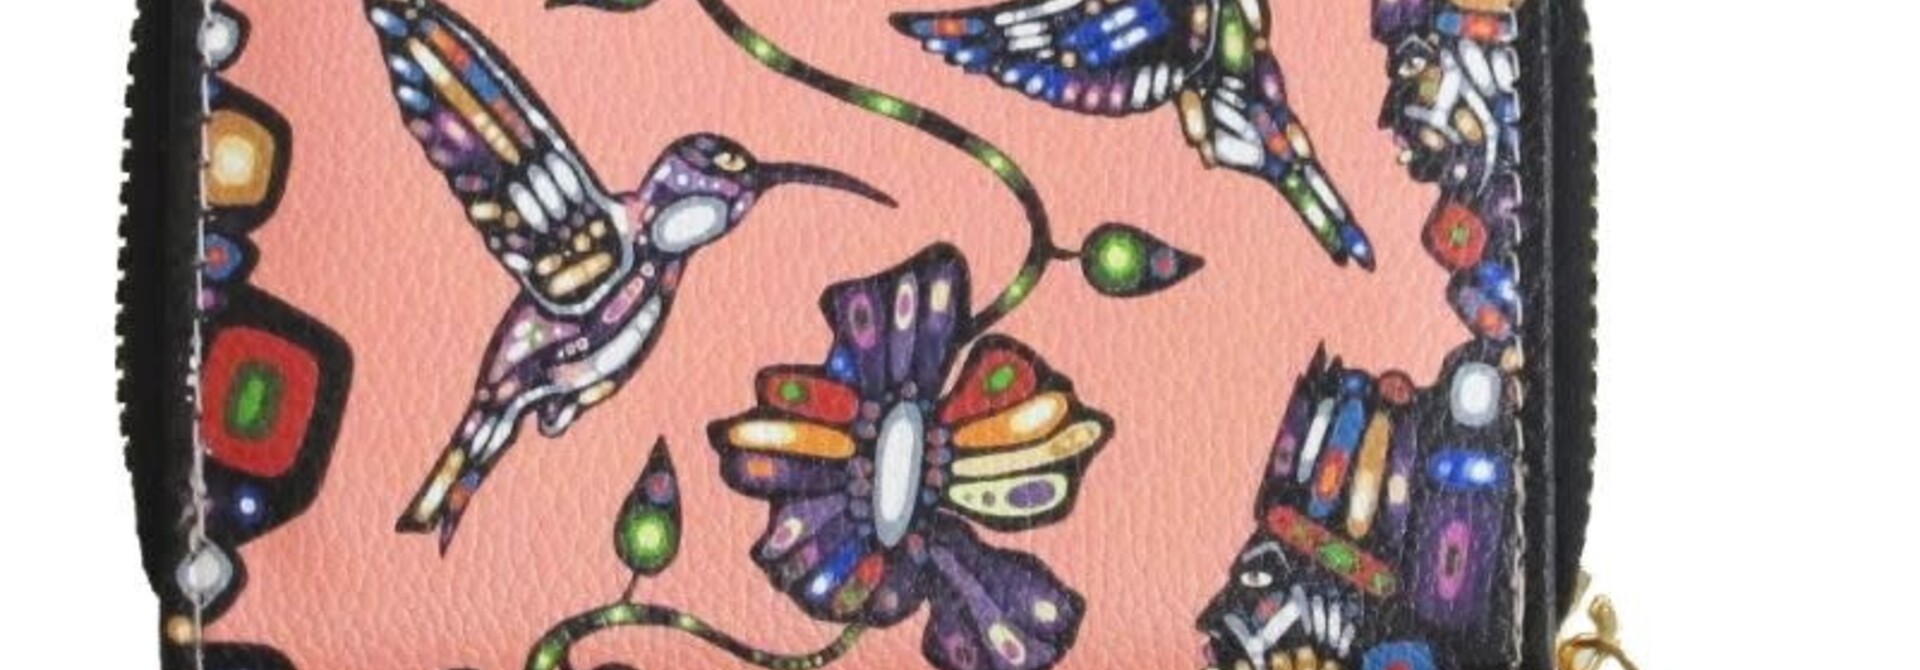 Card Wallet Hummingbird by John Rombough